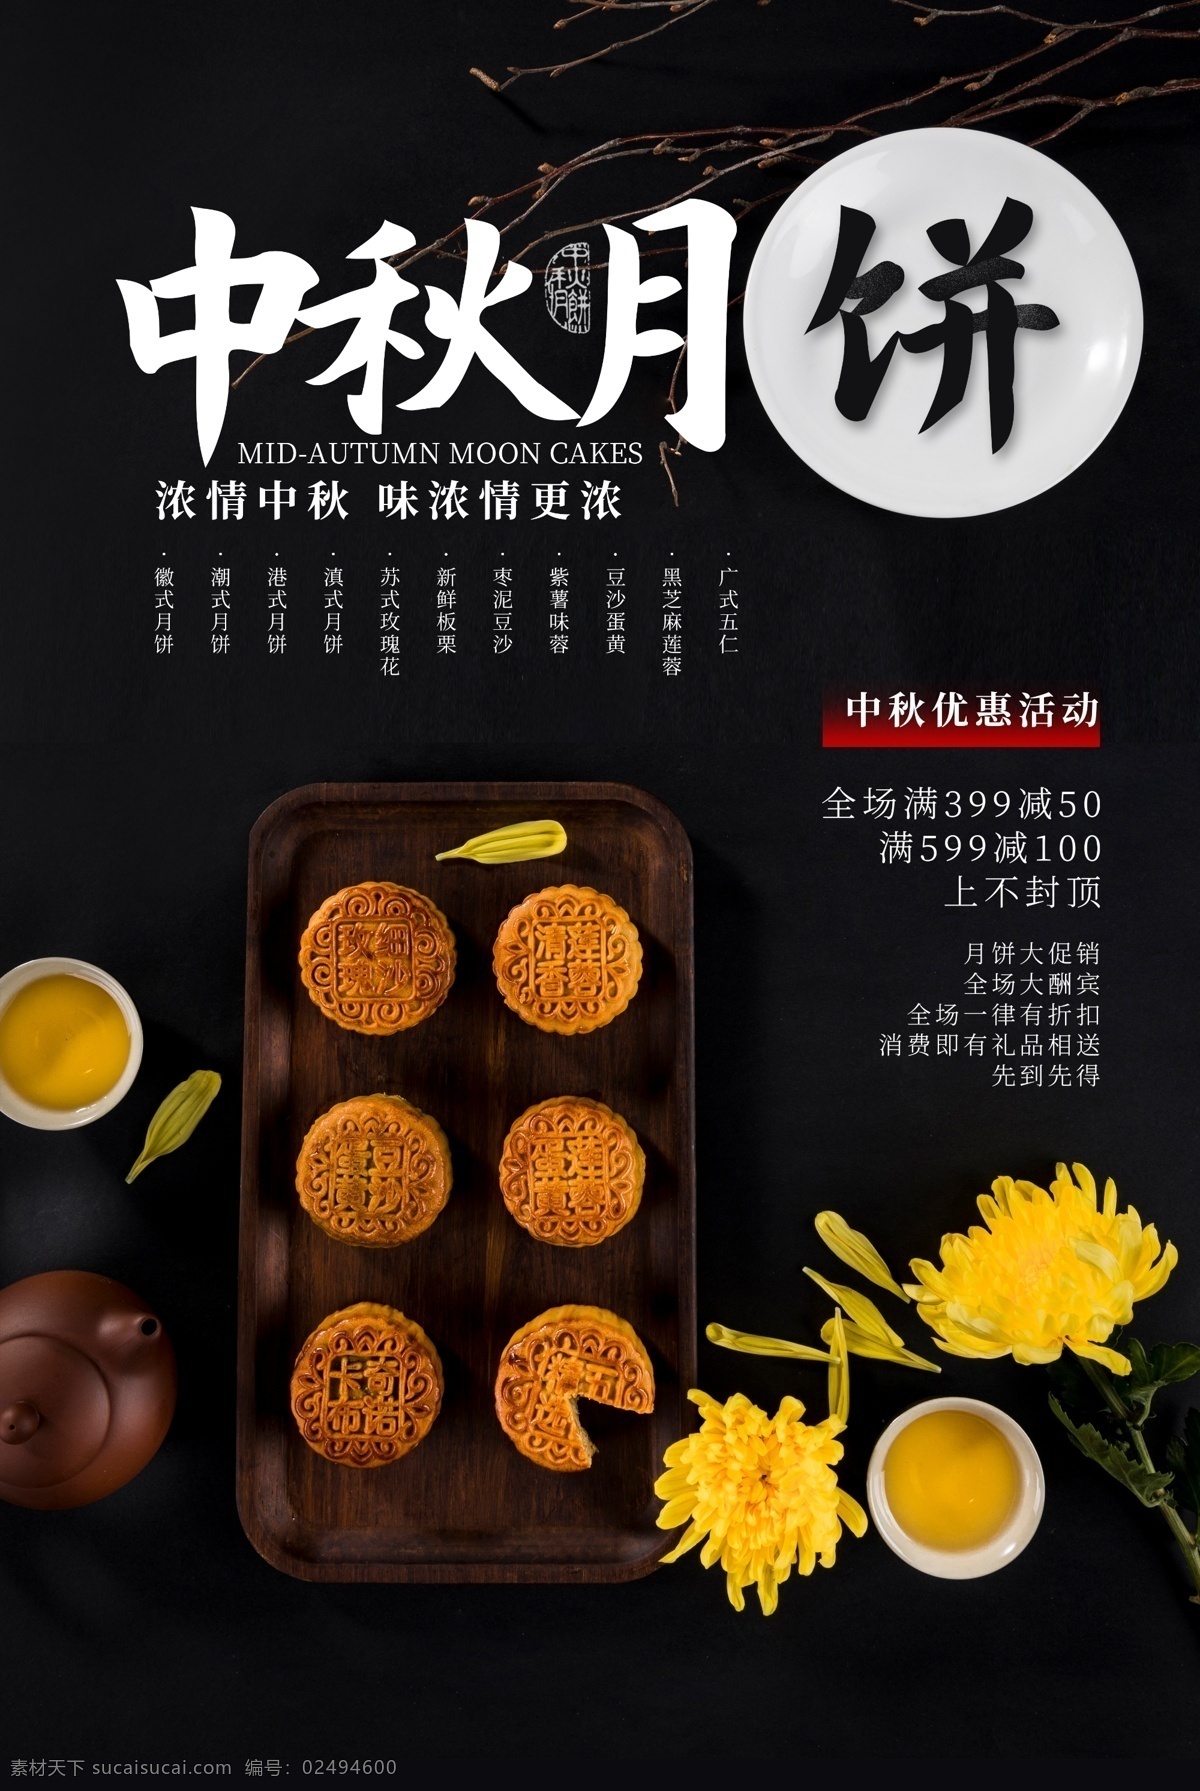 中秋月饼 美食 活动 海报 素材图片 中秋 月饼 餐饮美食 类